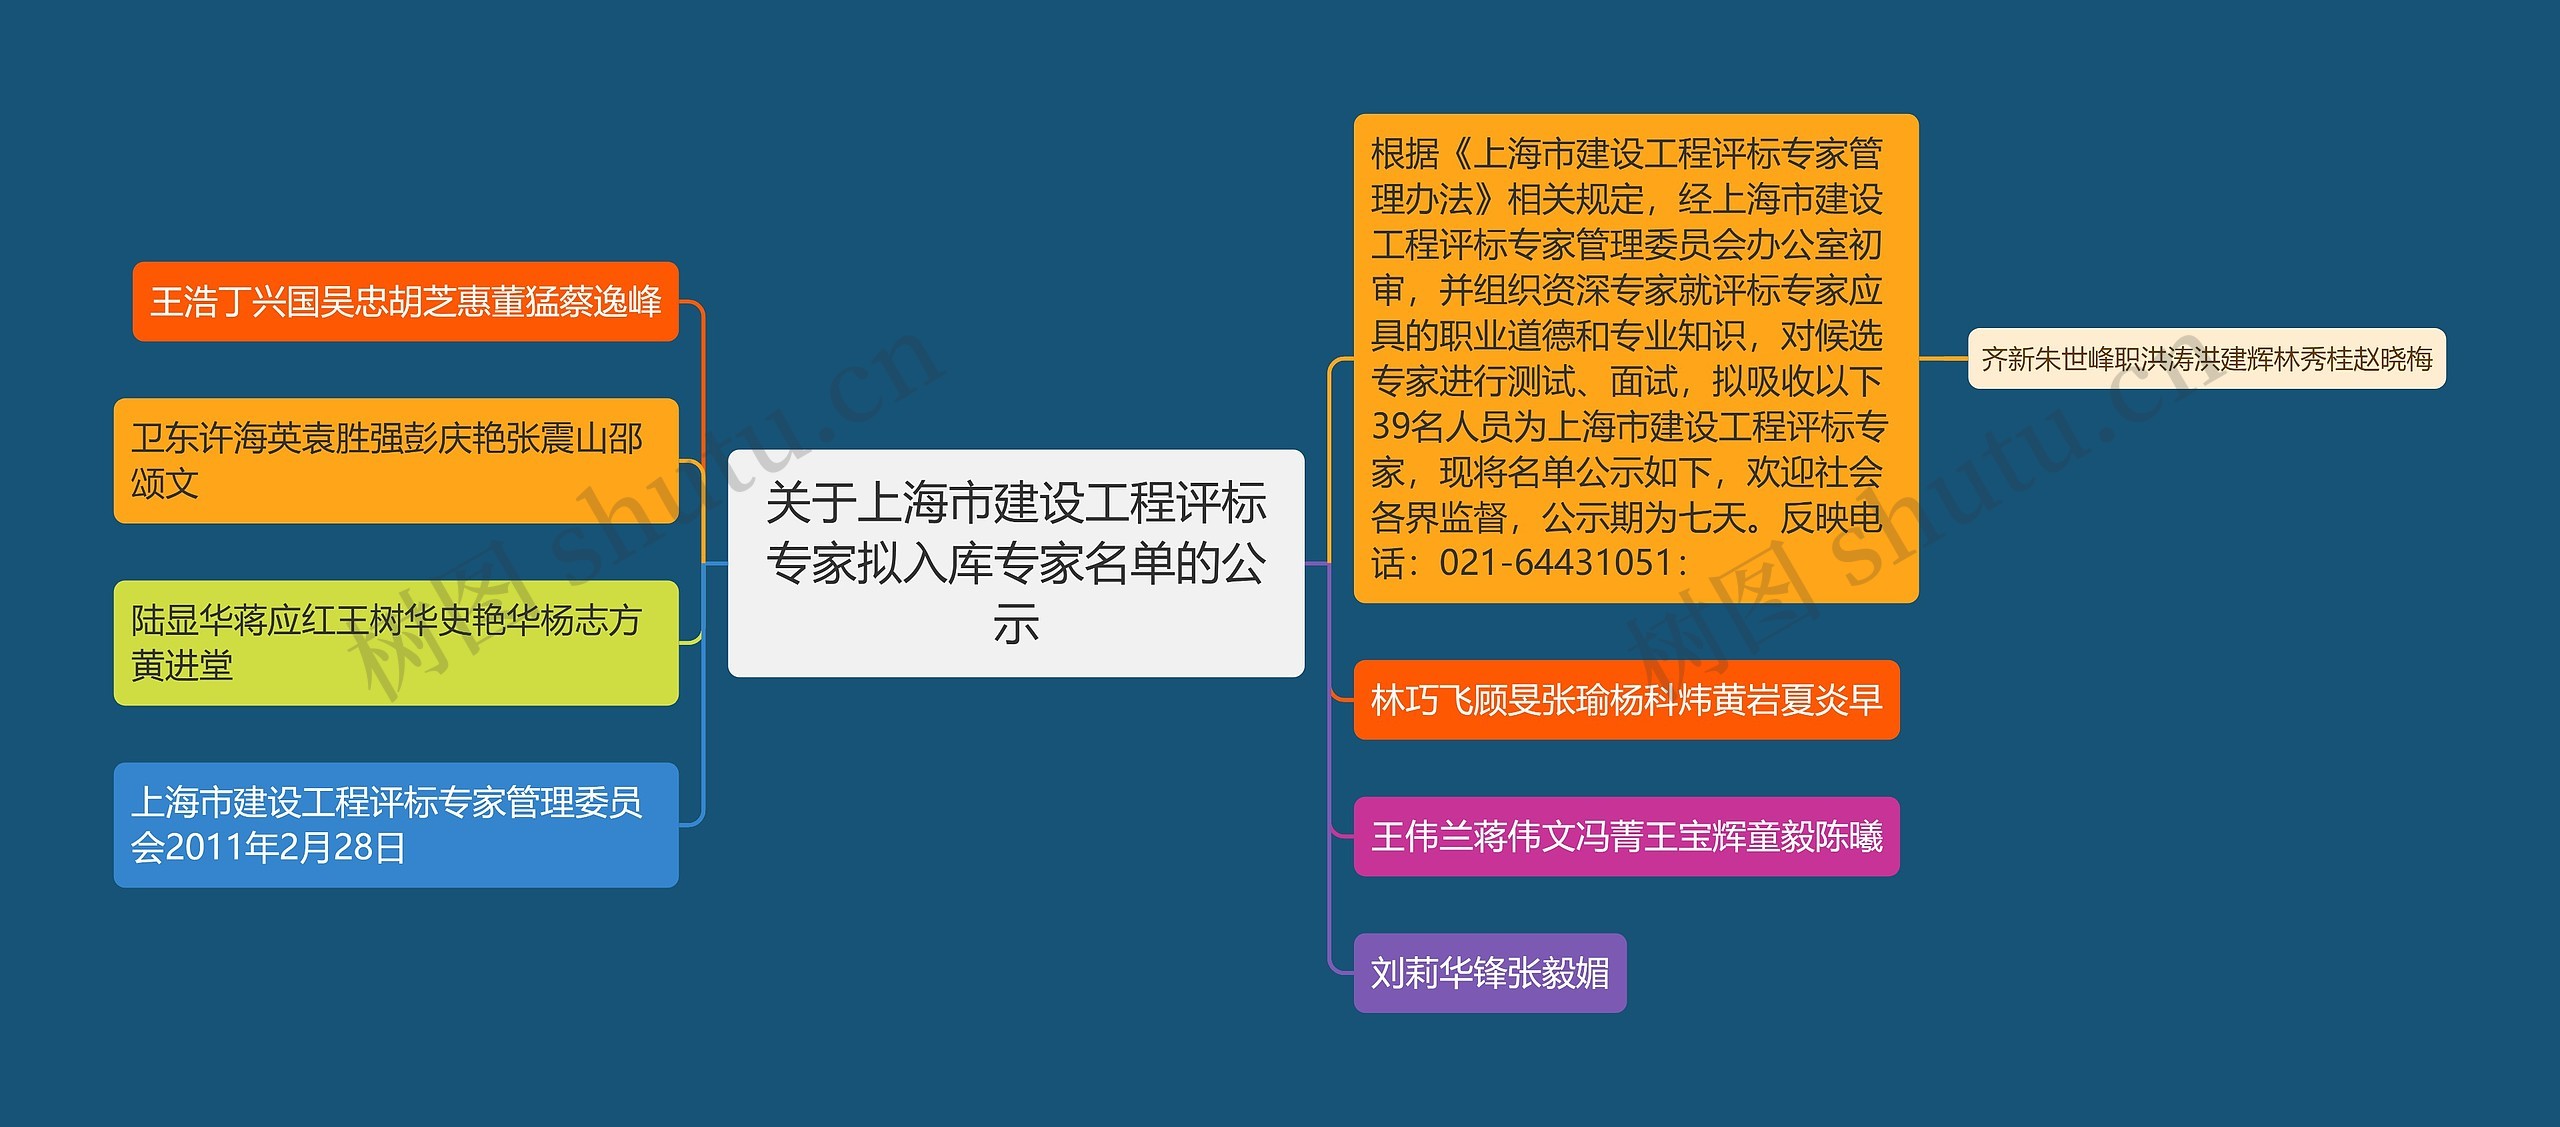 关于上海市建设工程评标专家拟入库专家名单的公示